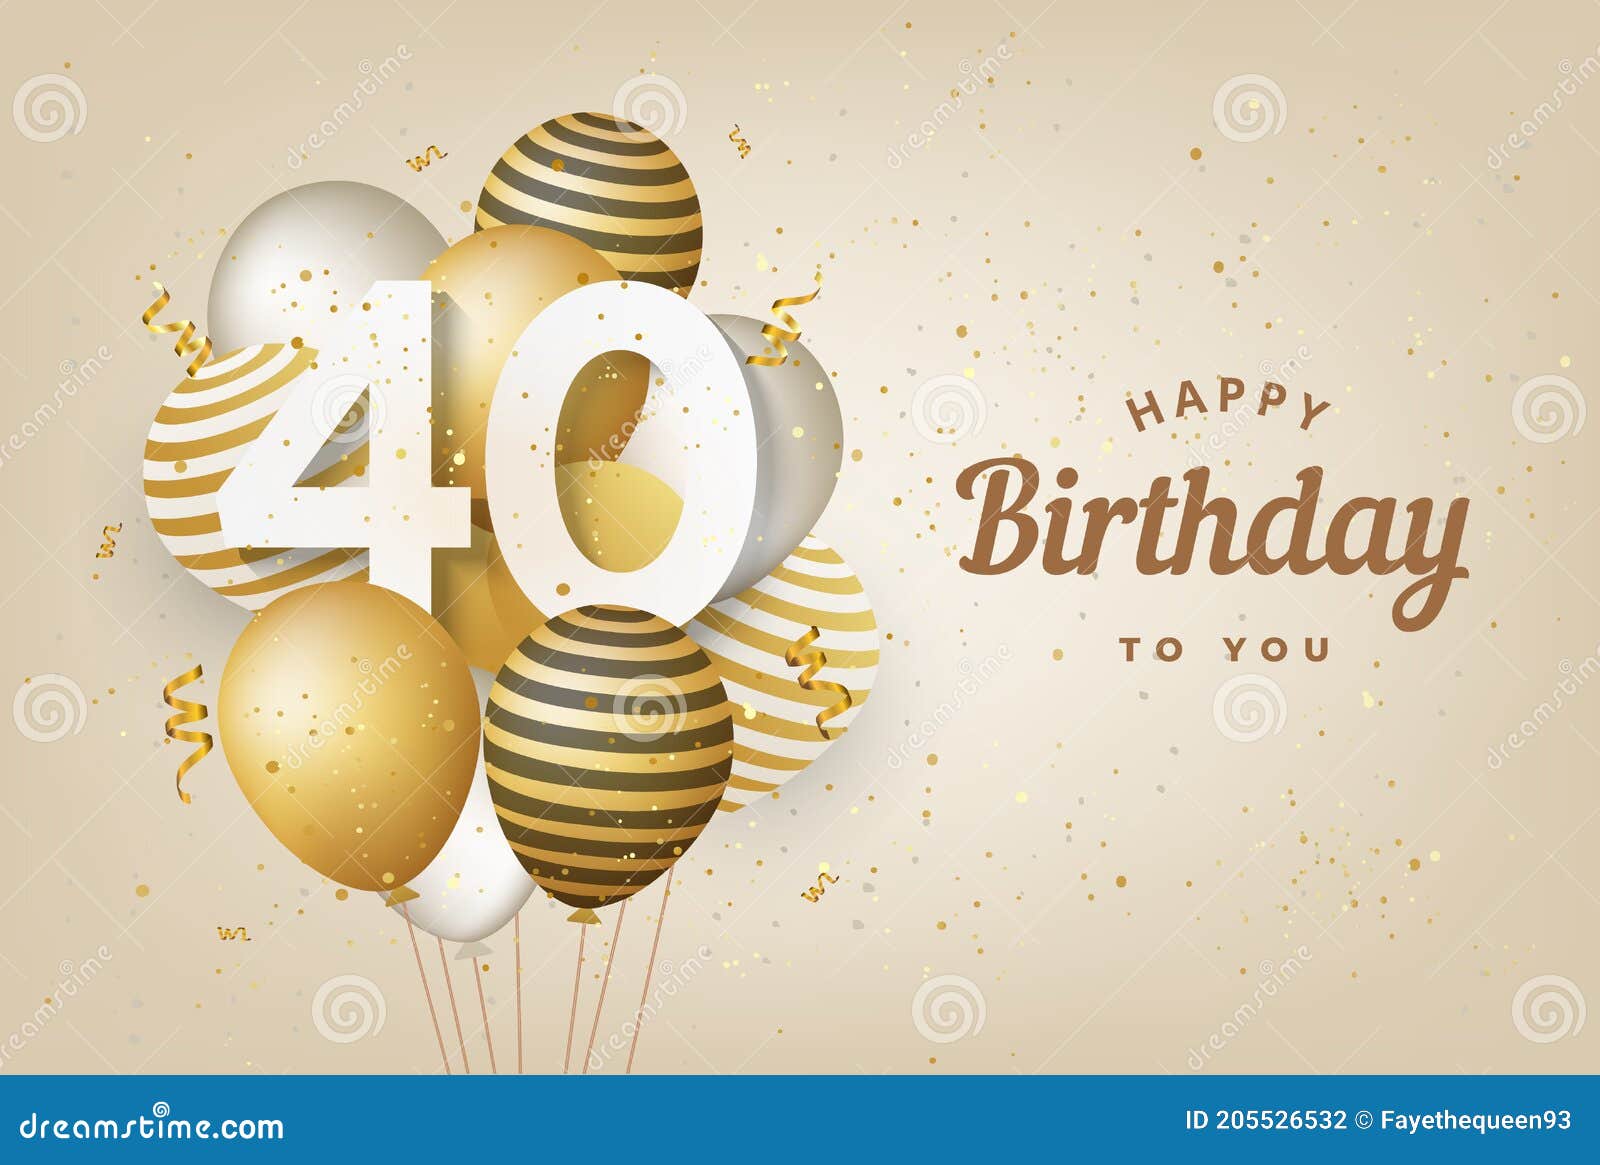 Những chiếc bóng bay vàng rực rỡ mang đến cảm giác vui tươi và đầy năng lượng cho bức ảnh. Hãy nhấp chuột để chúc mừng sinh nhật lần thứ 40 cho người thân yêu của bạn với thẻ chúc mừng sinh nhật dễ thương này.